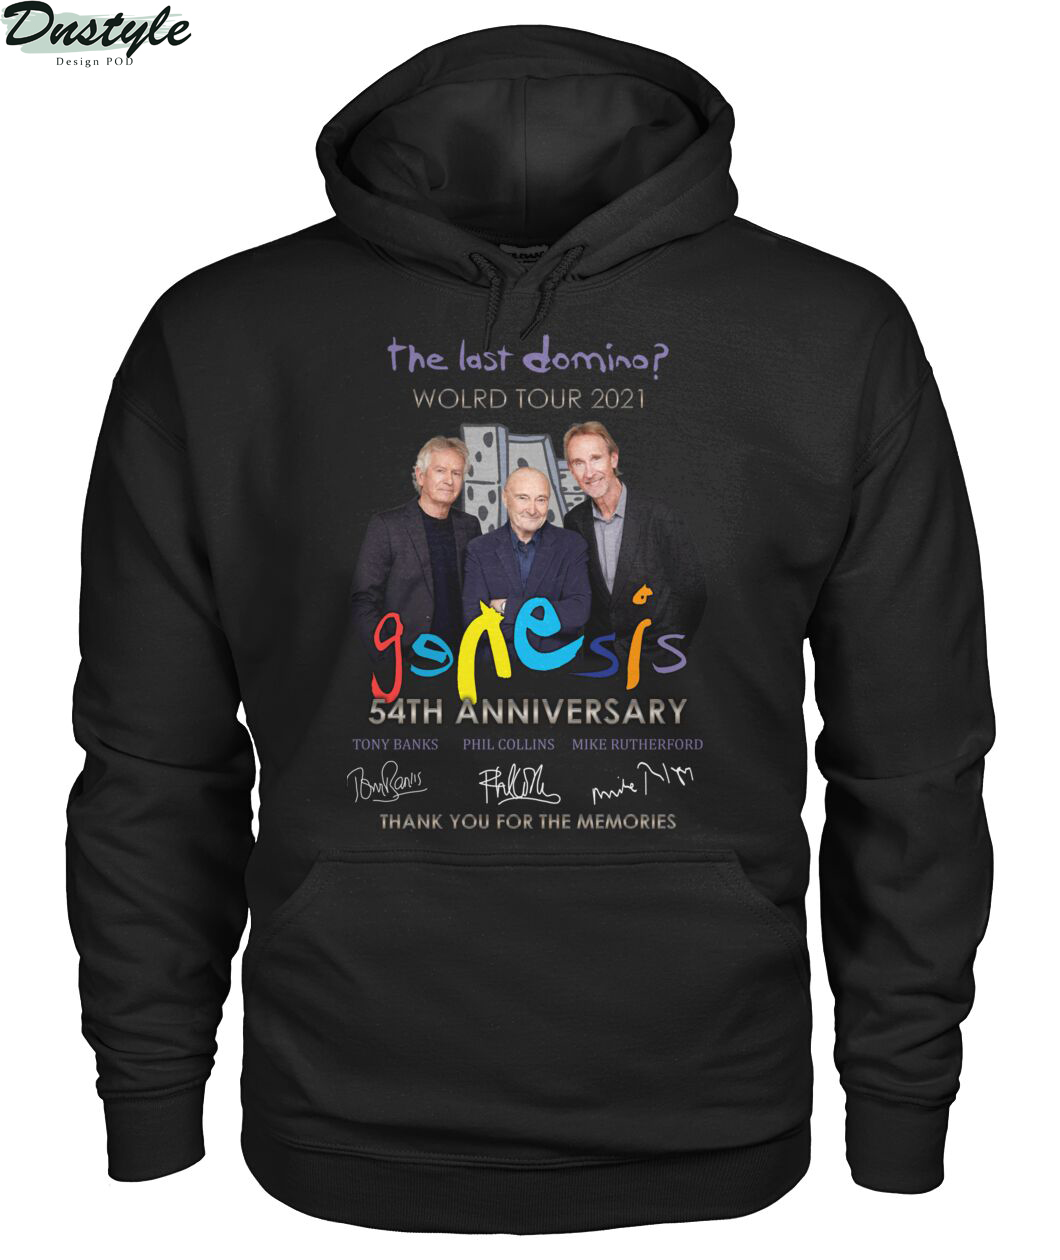 The last domino world tour 2021 Genesis 54th anniversary hoodie